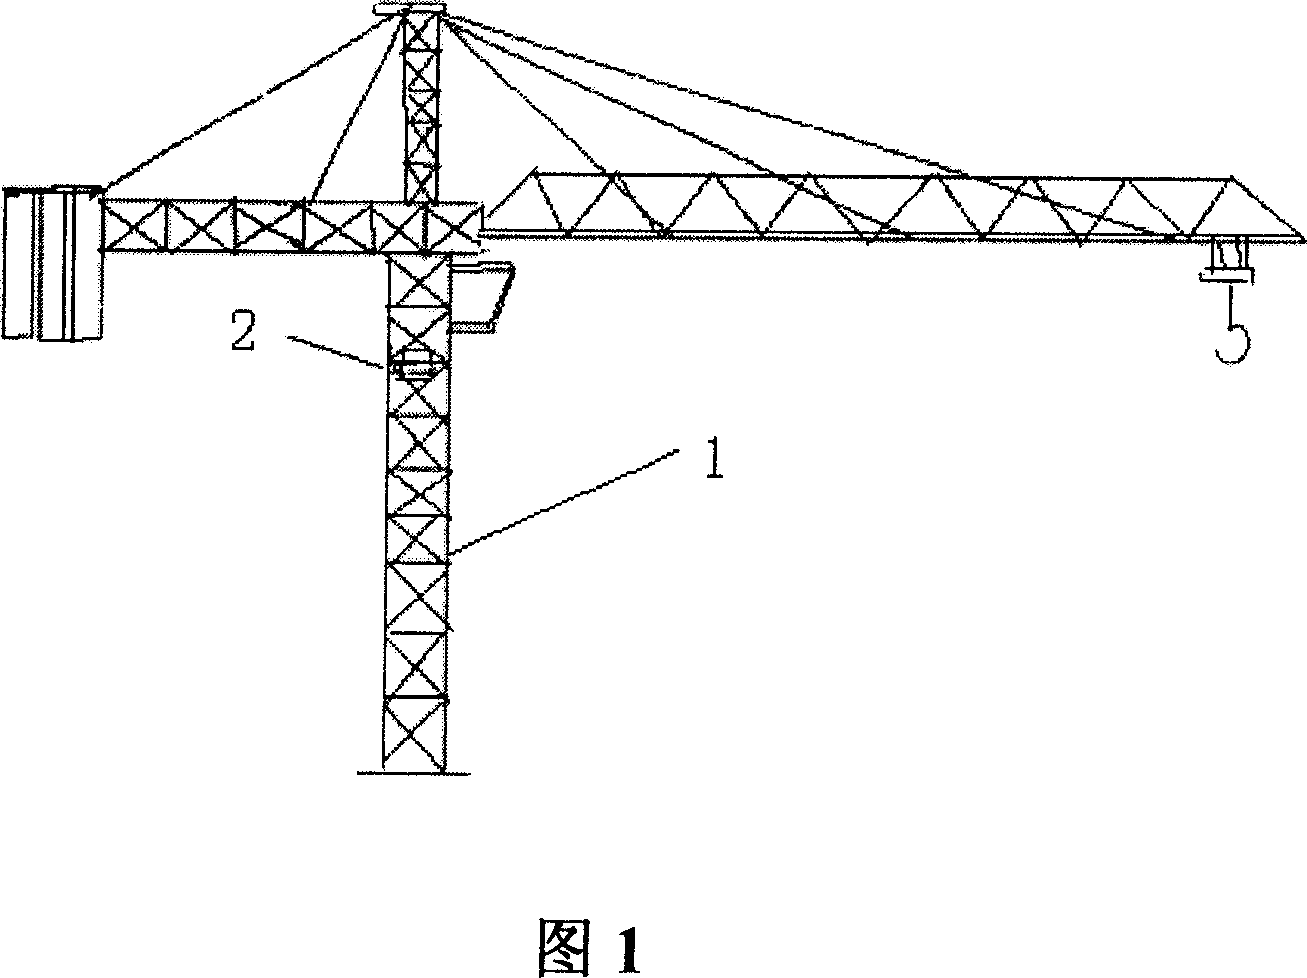 Tower crane using giomagnetic sensor